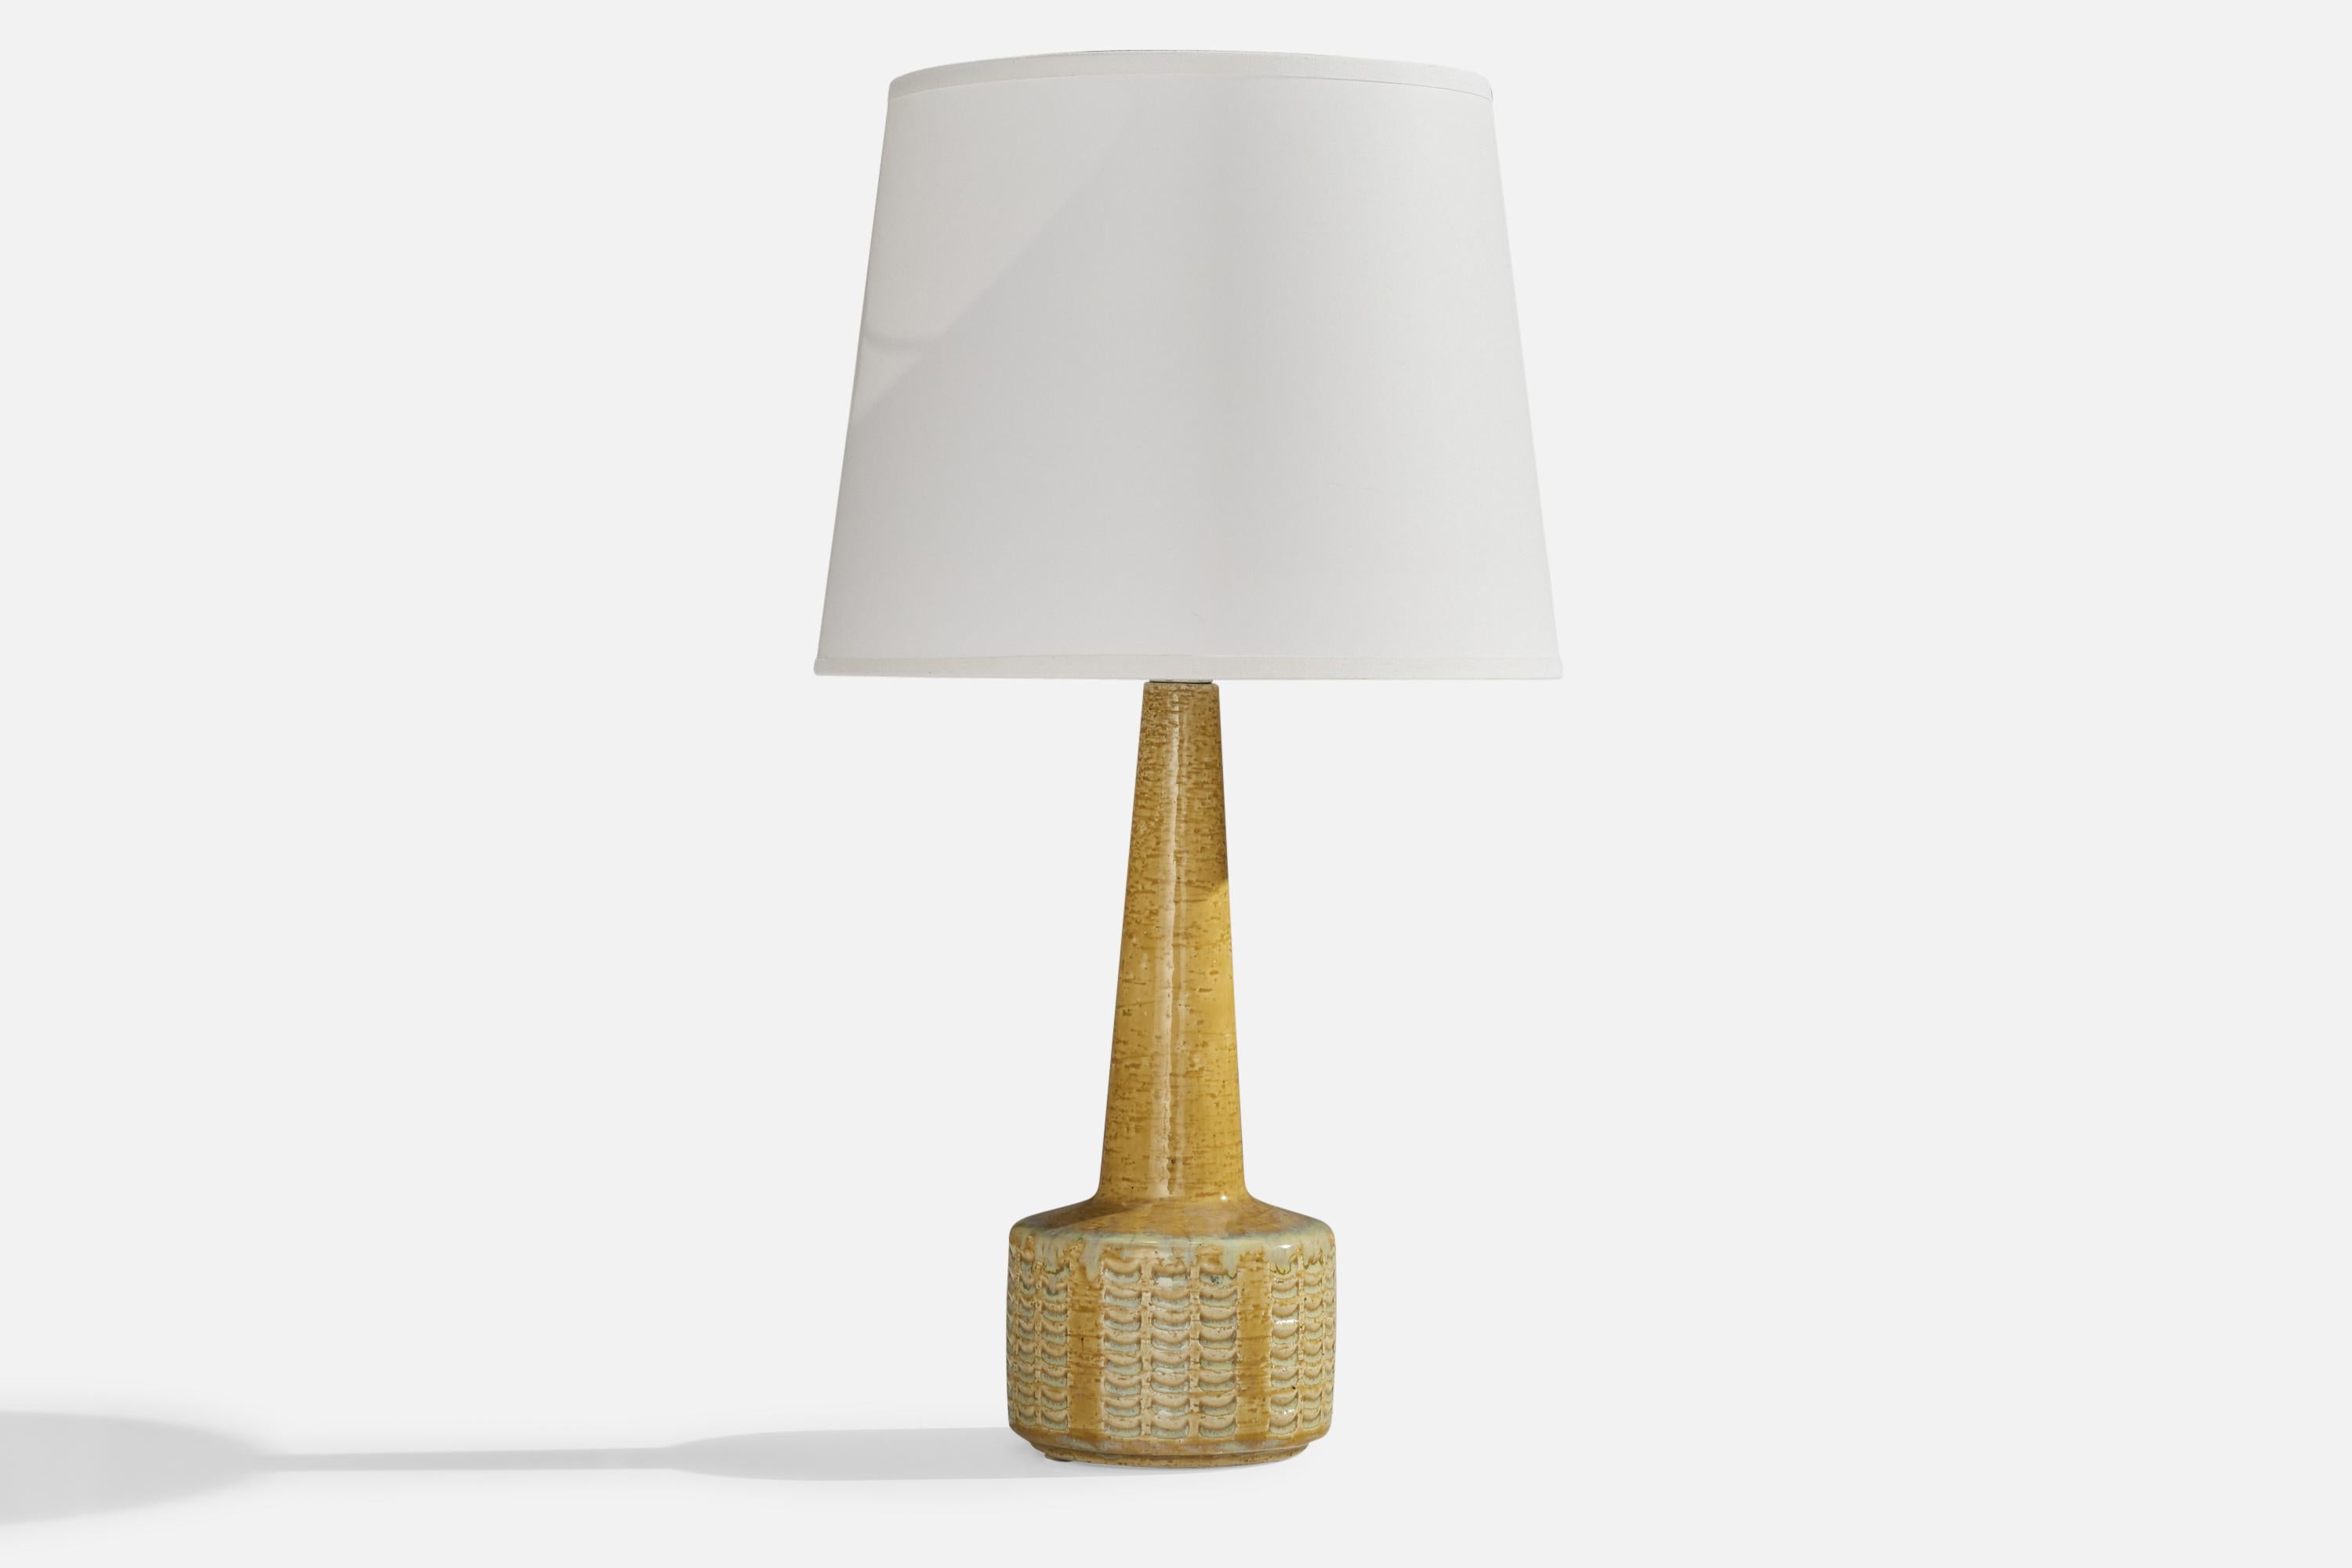 Tischlampe aus gelb glasiertem Steingut, entworfen von Per & Annelise Linneman-Schmidt und hergestellt von Palshus, Dänemark, 1960er Jahre.

Abmessungen der Lampe (Zoll): 13